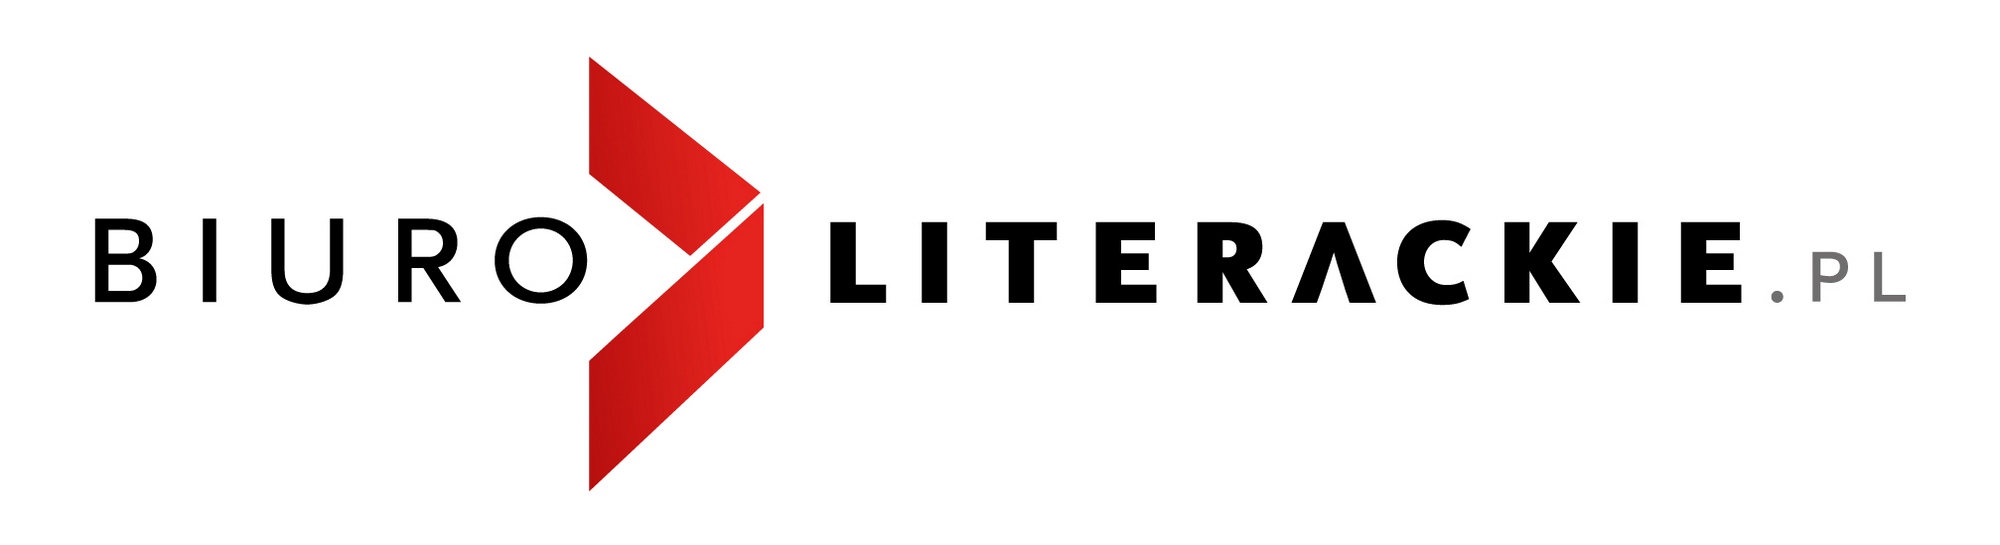 Biuro Literackie – logotyp (źródło: materiały prasowe)